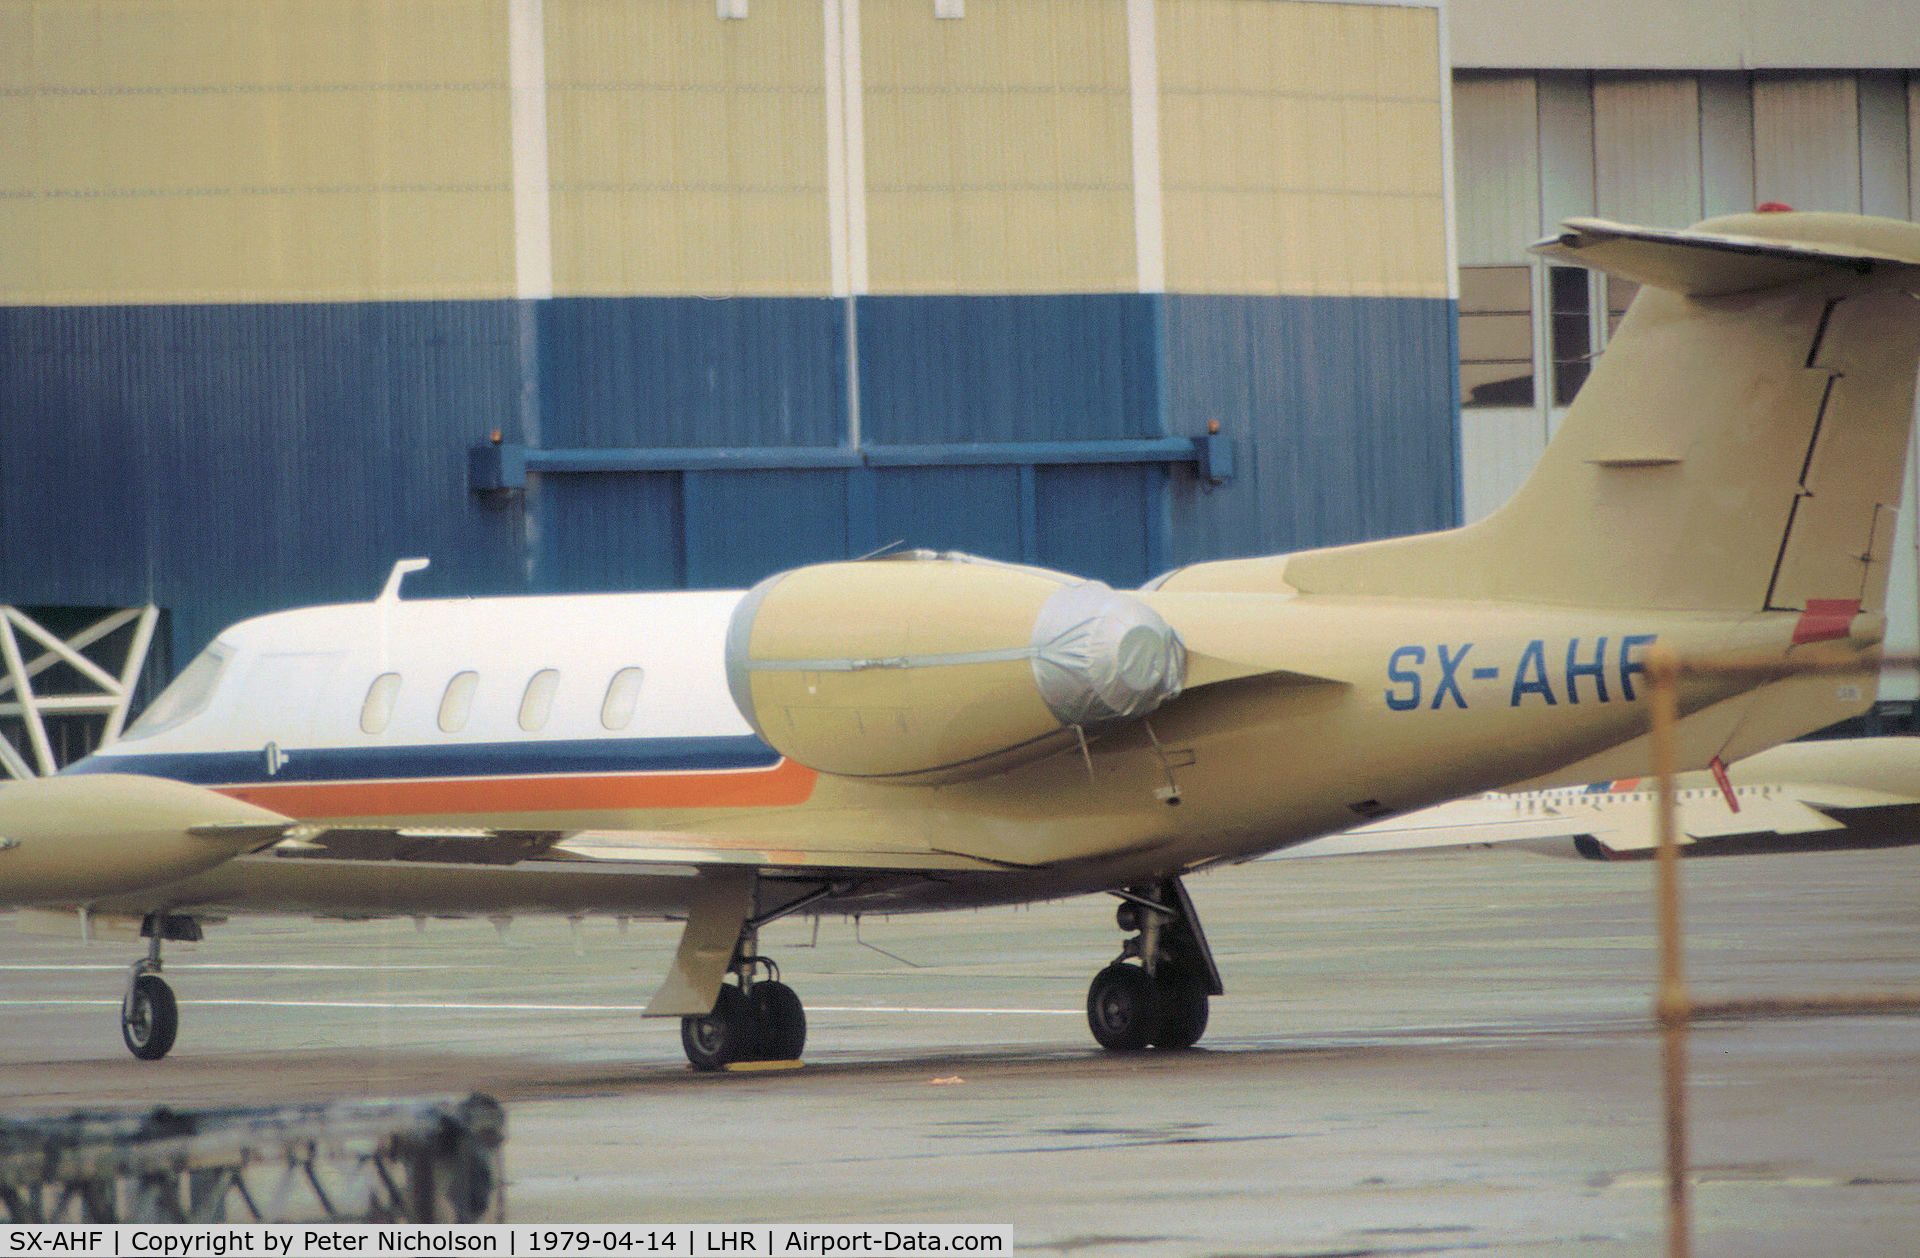 SX-AHF, 1975 Gates Learjet 36 C/N 007, Learjet 36 as seen at Heathrow in April 1979.